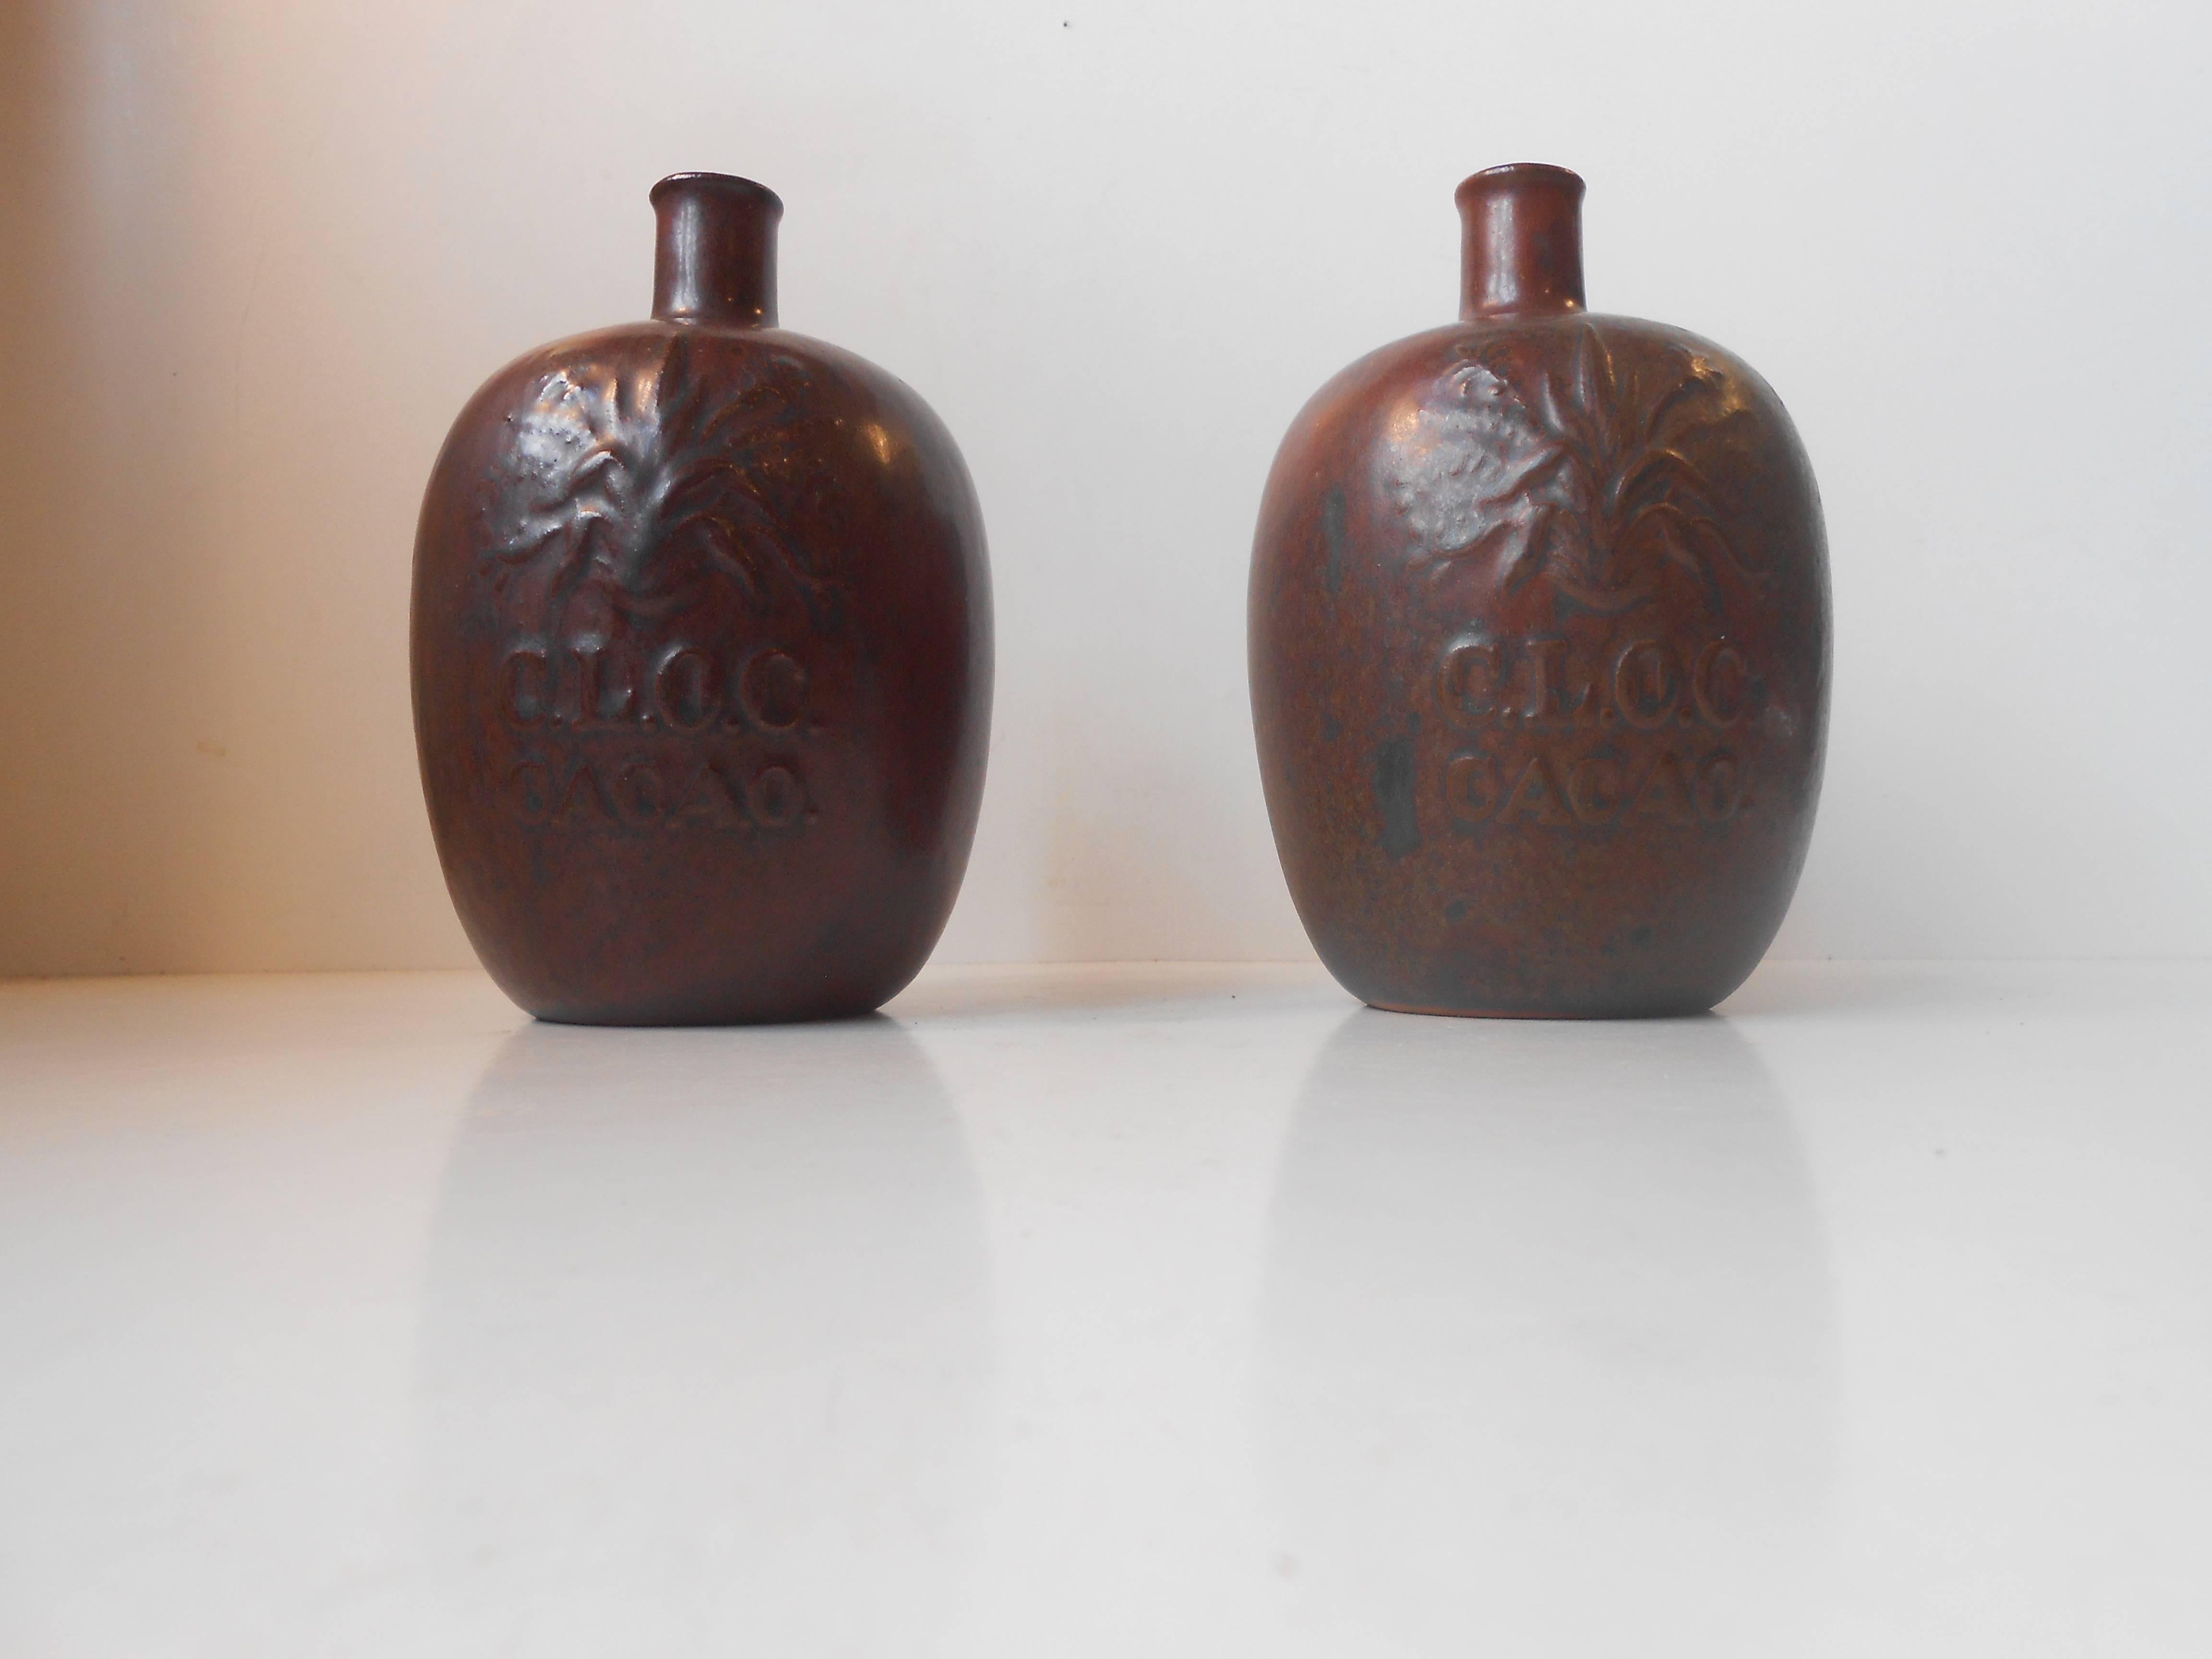 Arne Bang Glazed Stoneware Bottle Vases, 1930s In Good Condition For Sale In Esbjerg, DK